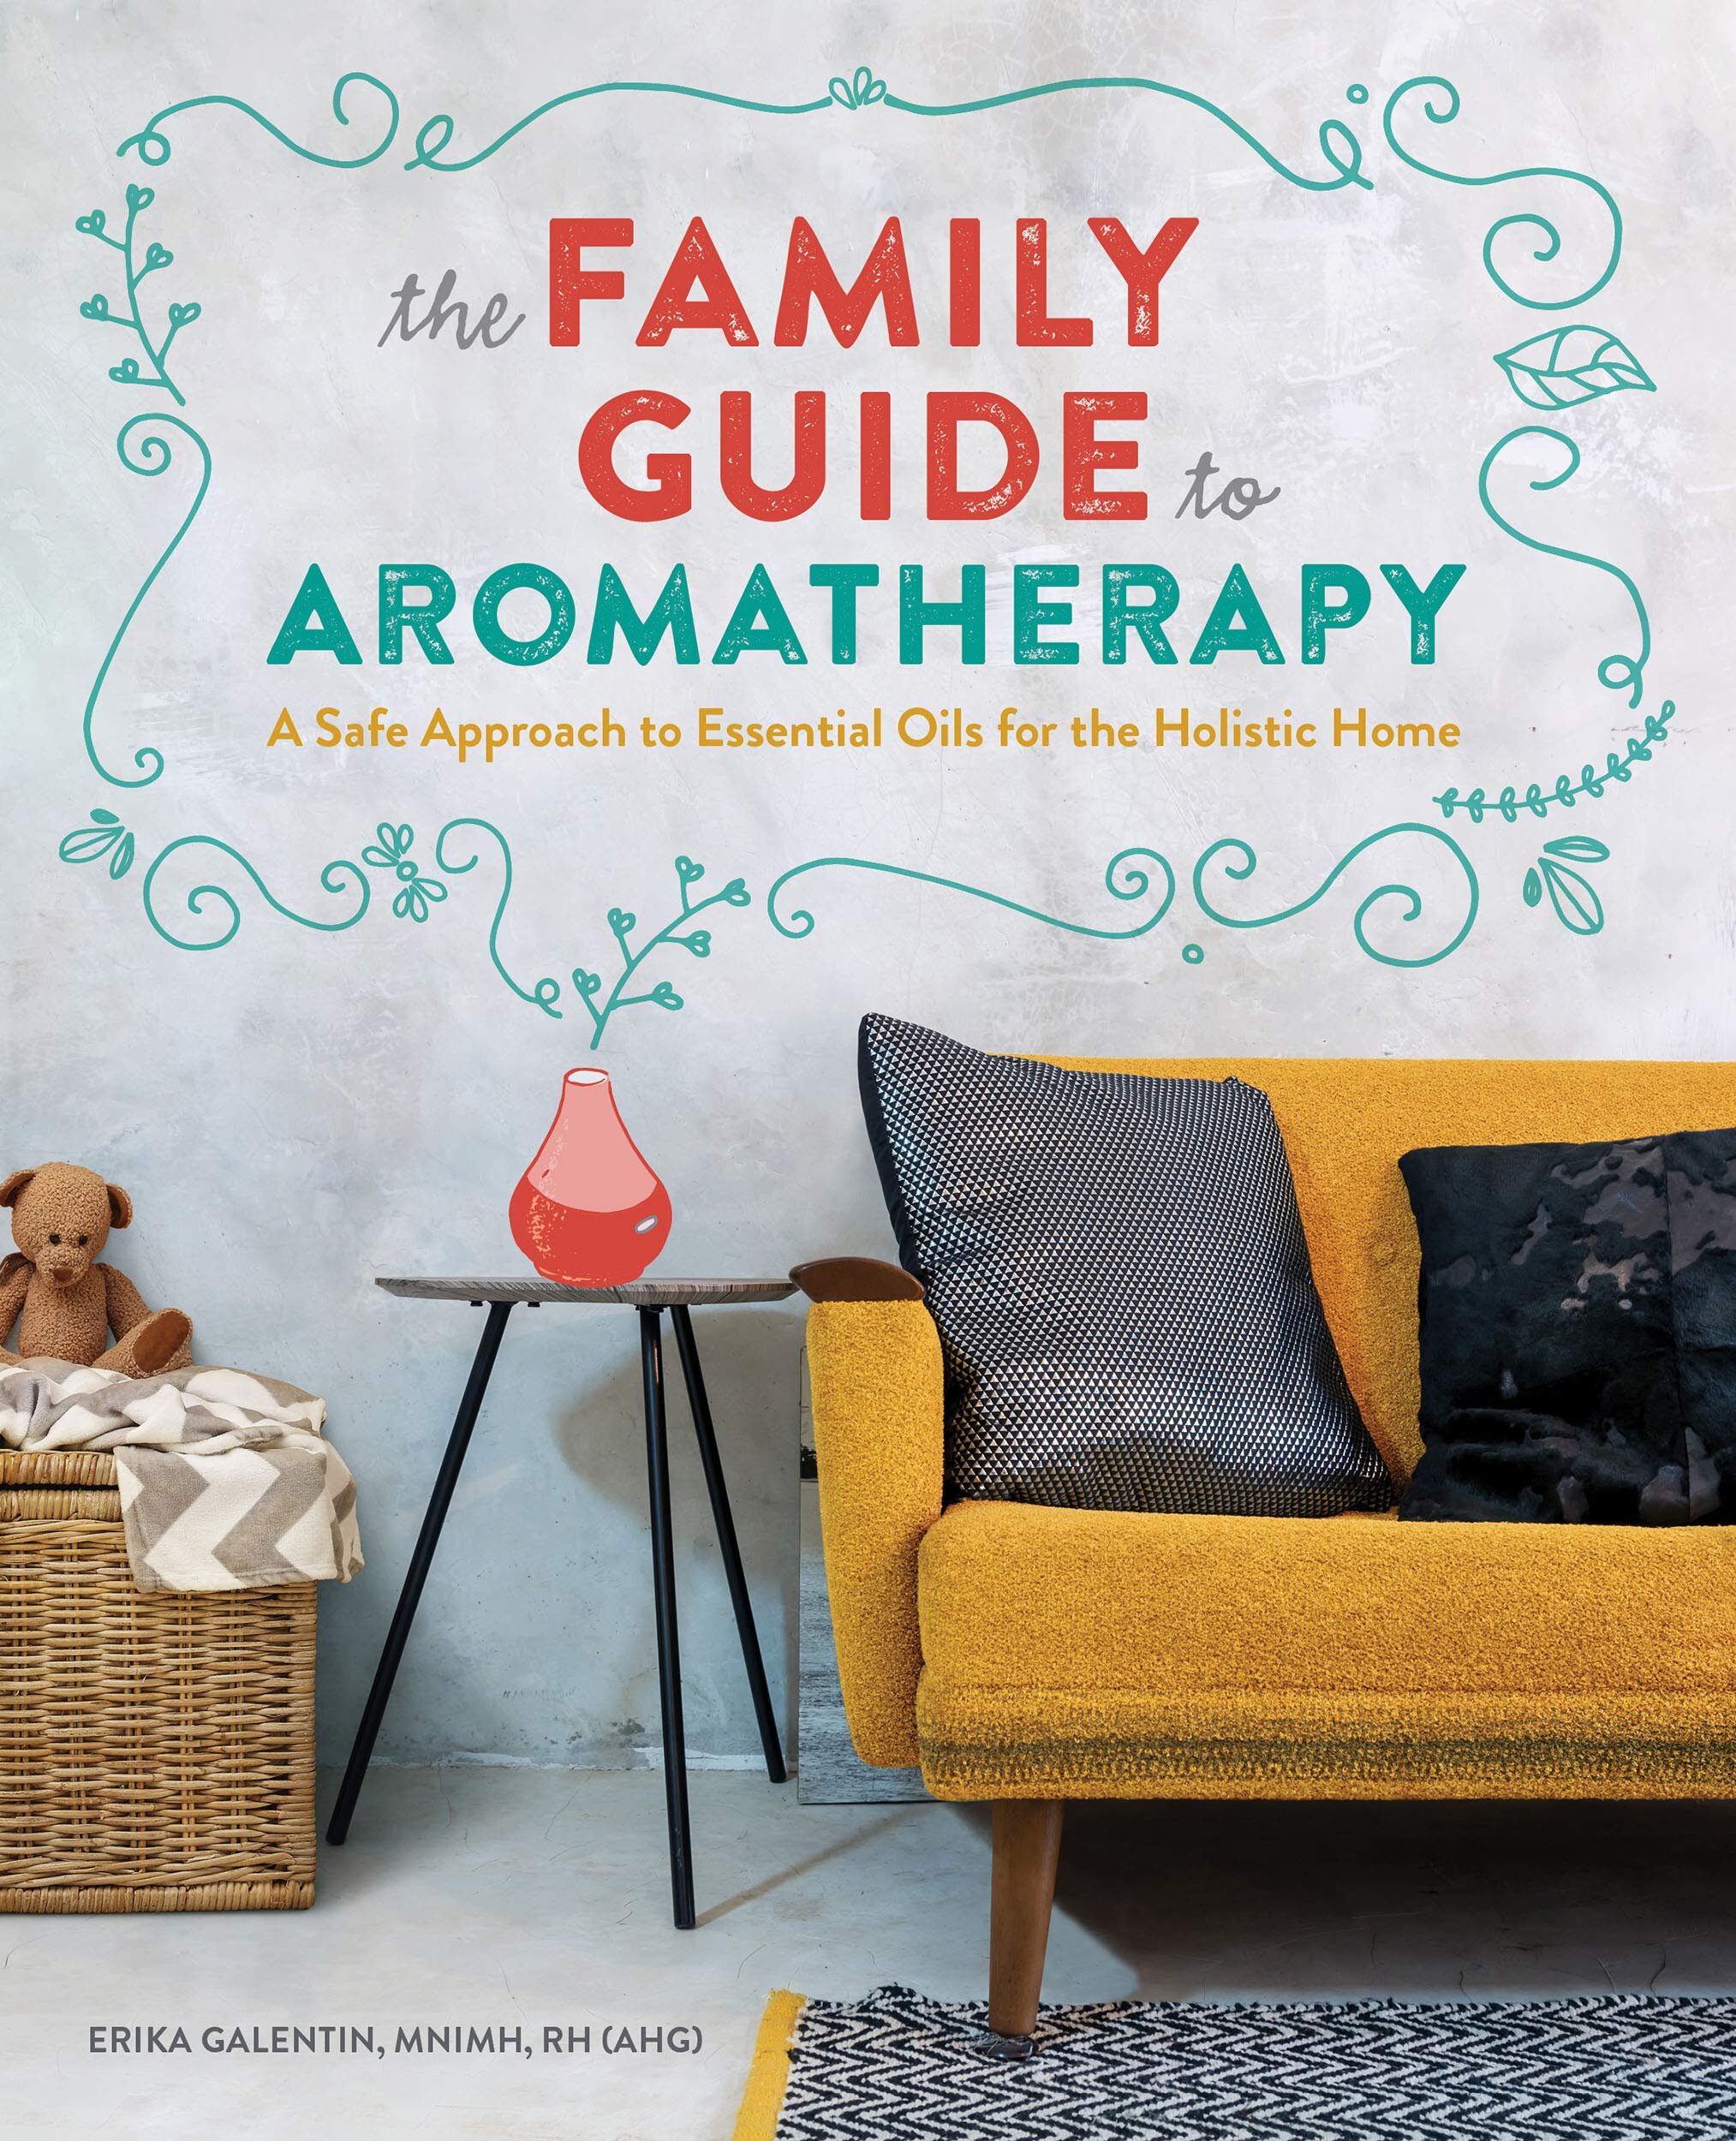 FamilyGuide_Aromatherapy.jpg